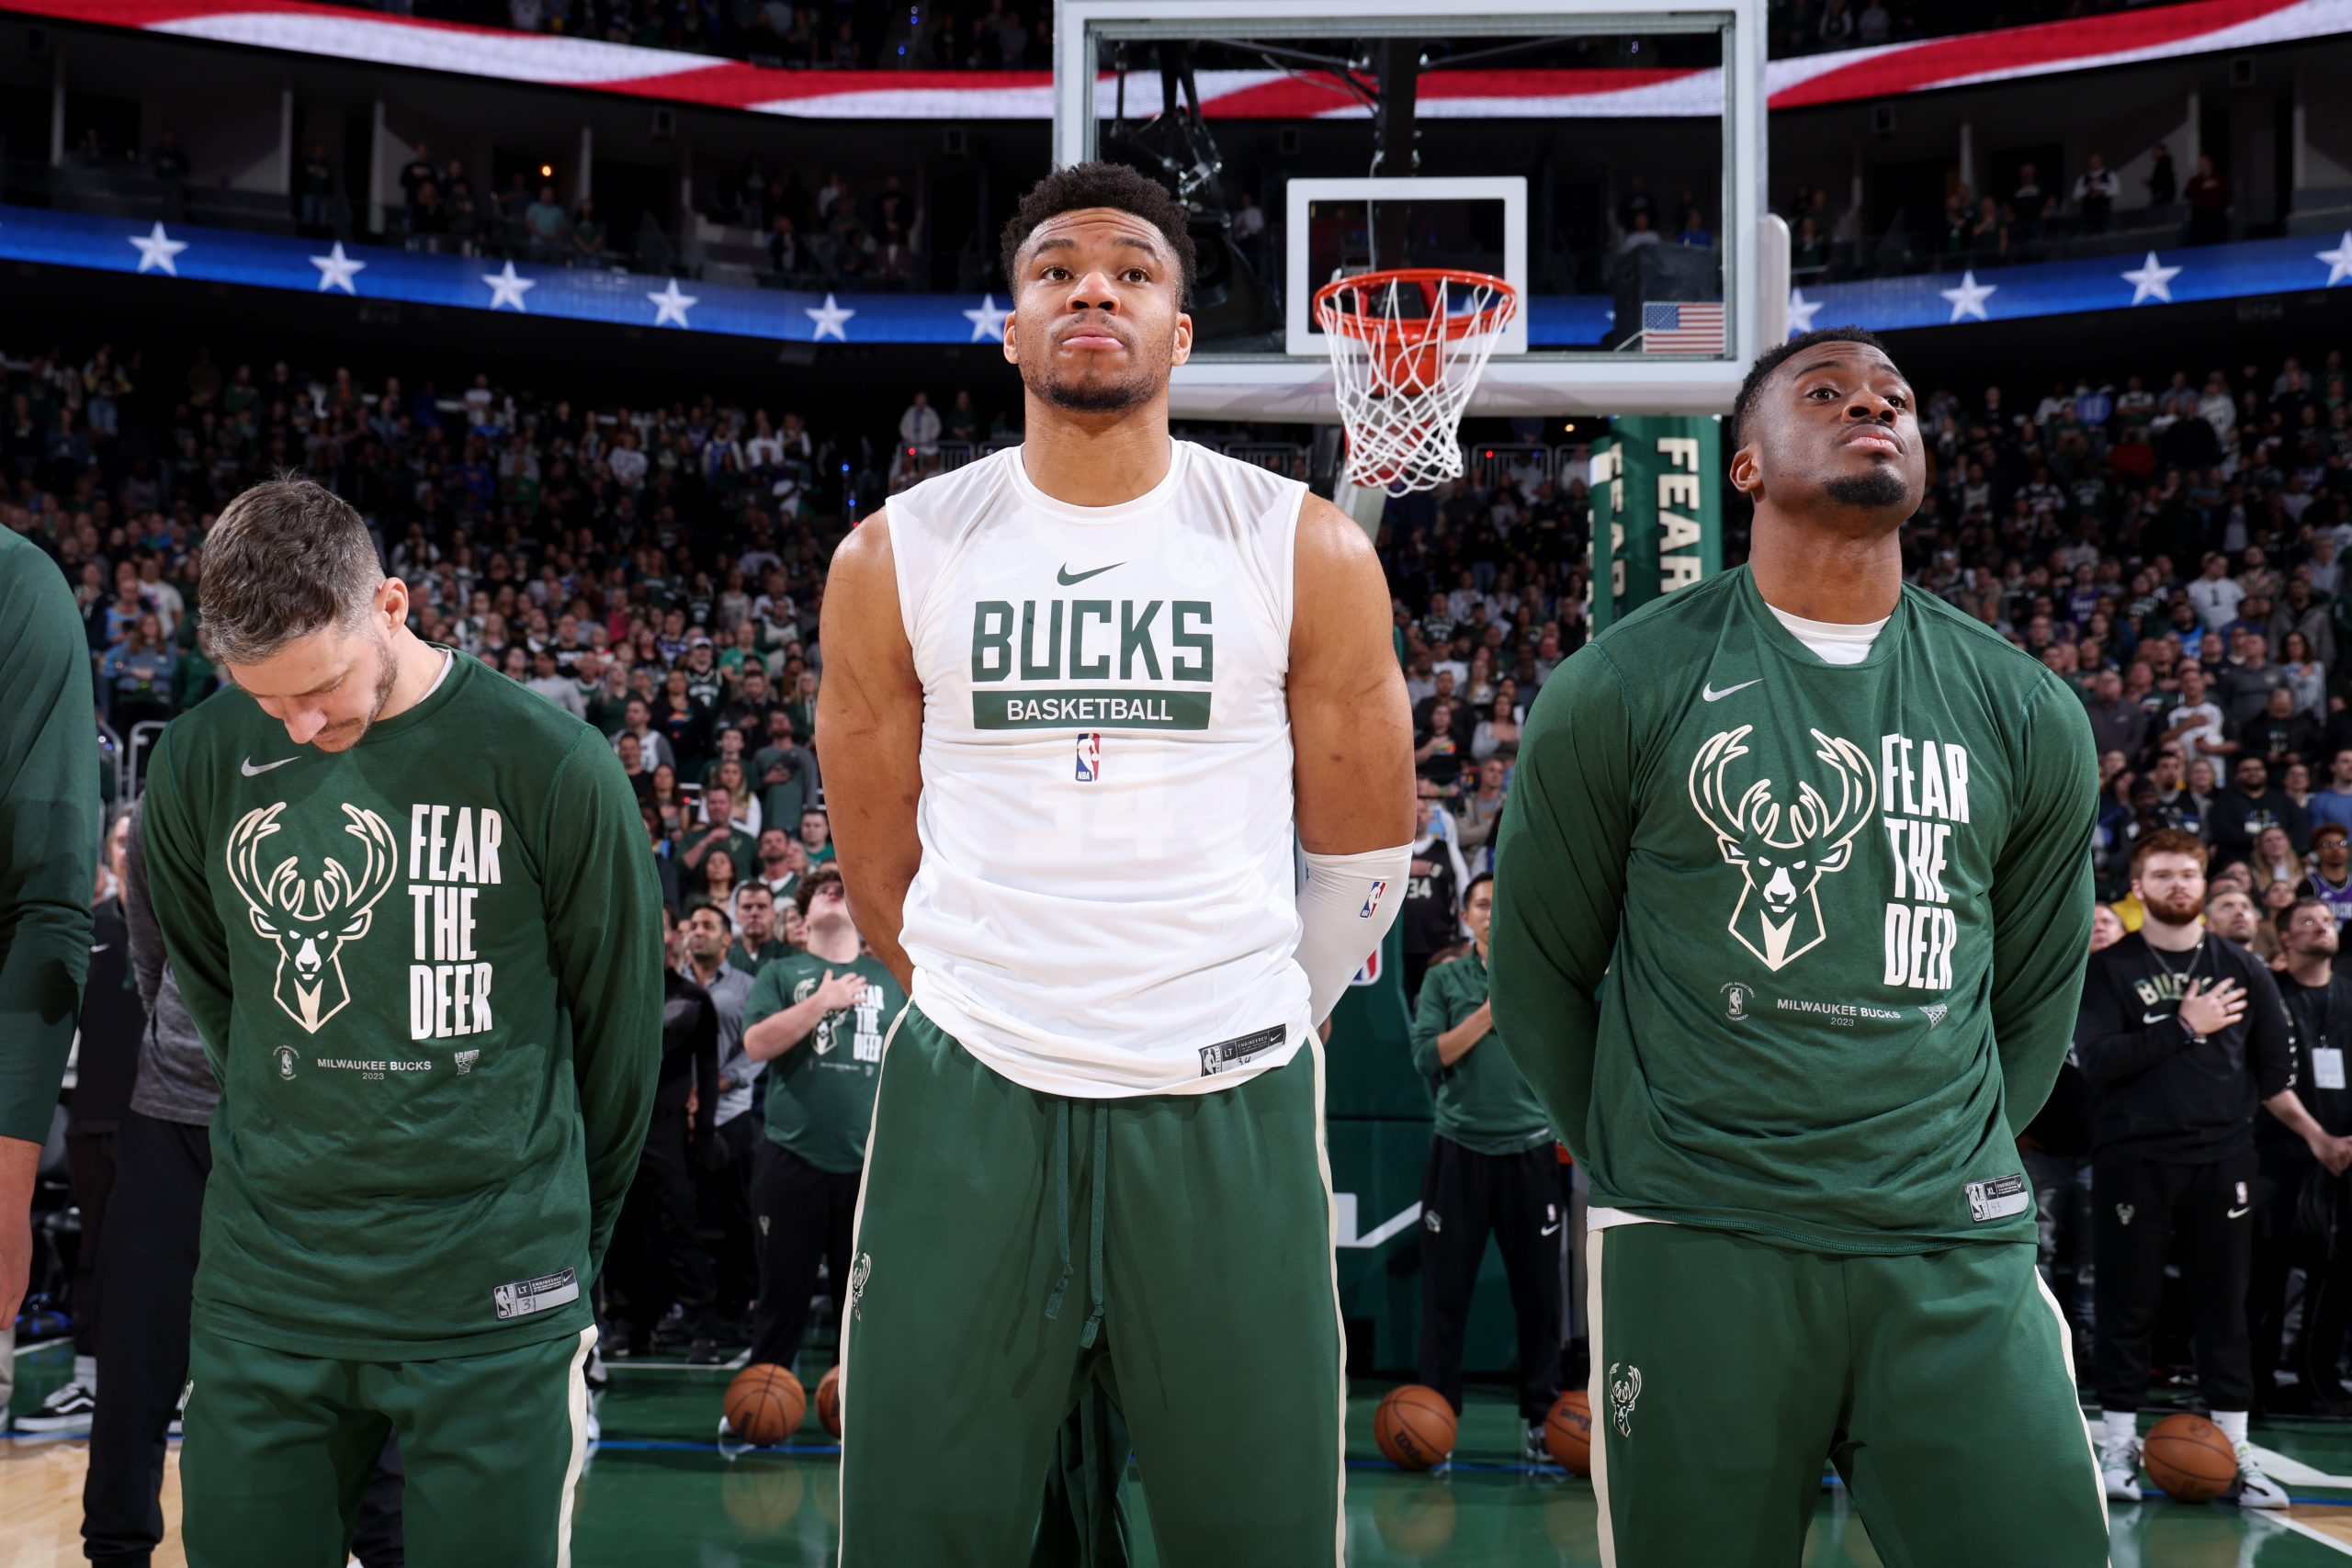 Przed nami być może najbardziej emocjonujący mecz sezonu – Game 7 Celtics z Heat